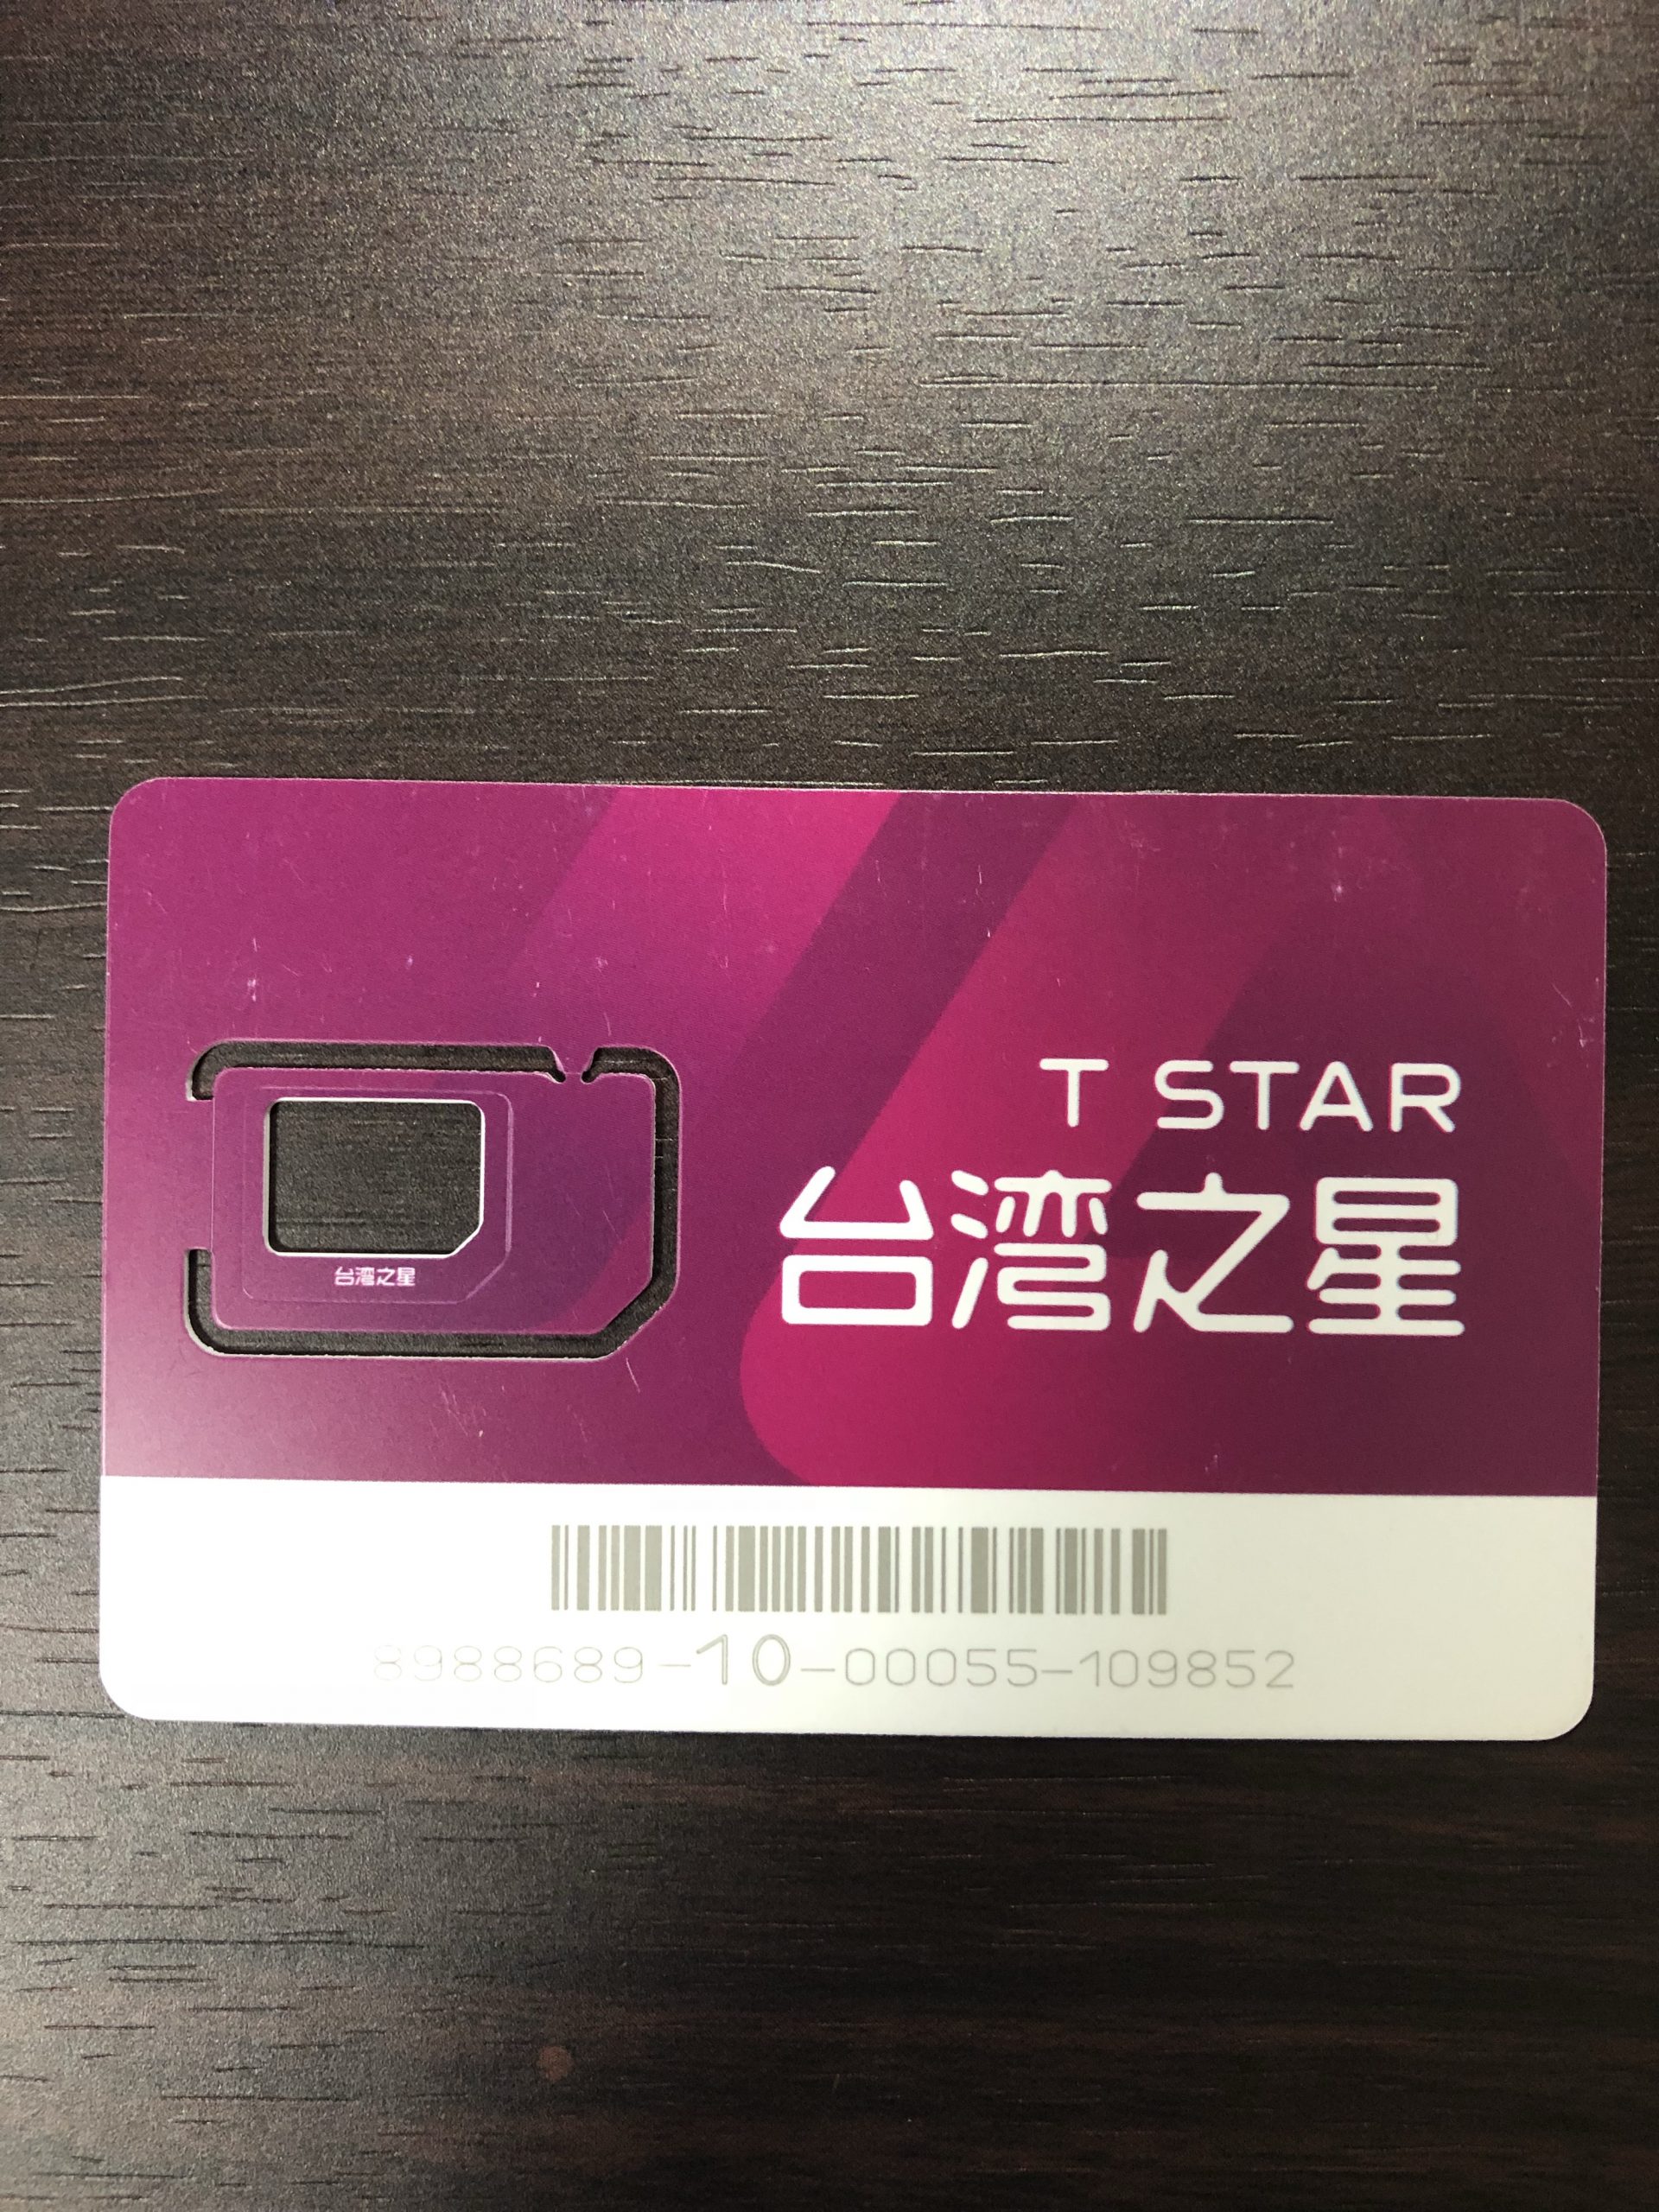 台湾滞在を快適に！台湾之星SIMカード使用ガイド【台湾のSIMカード】